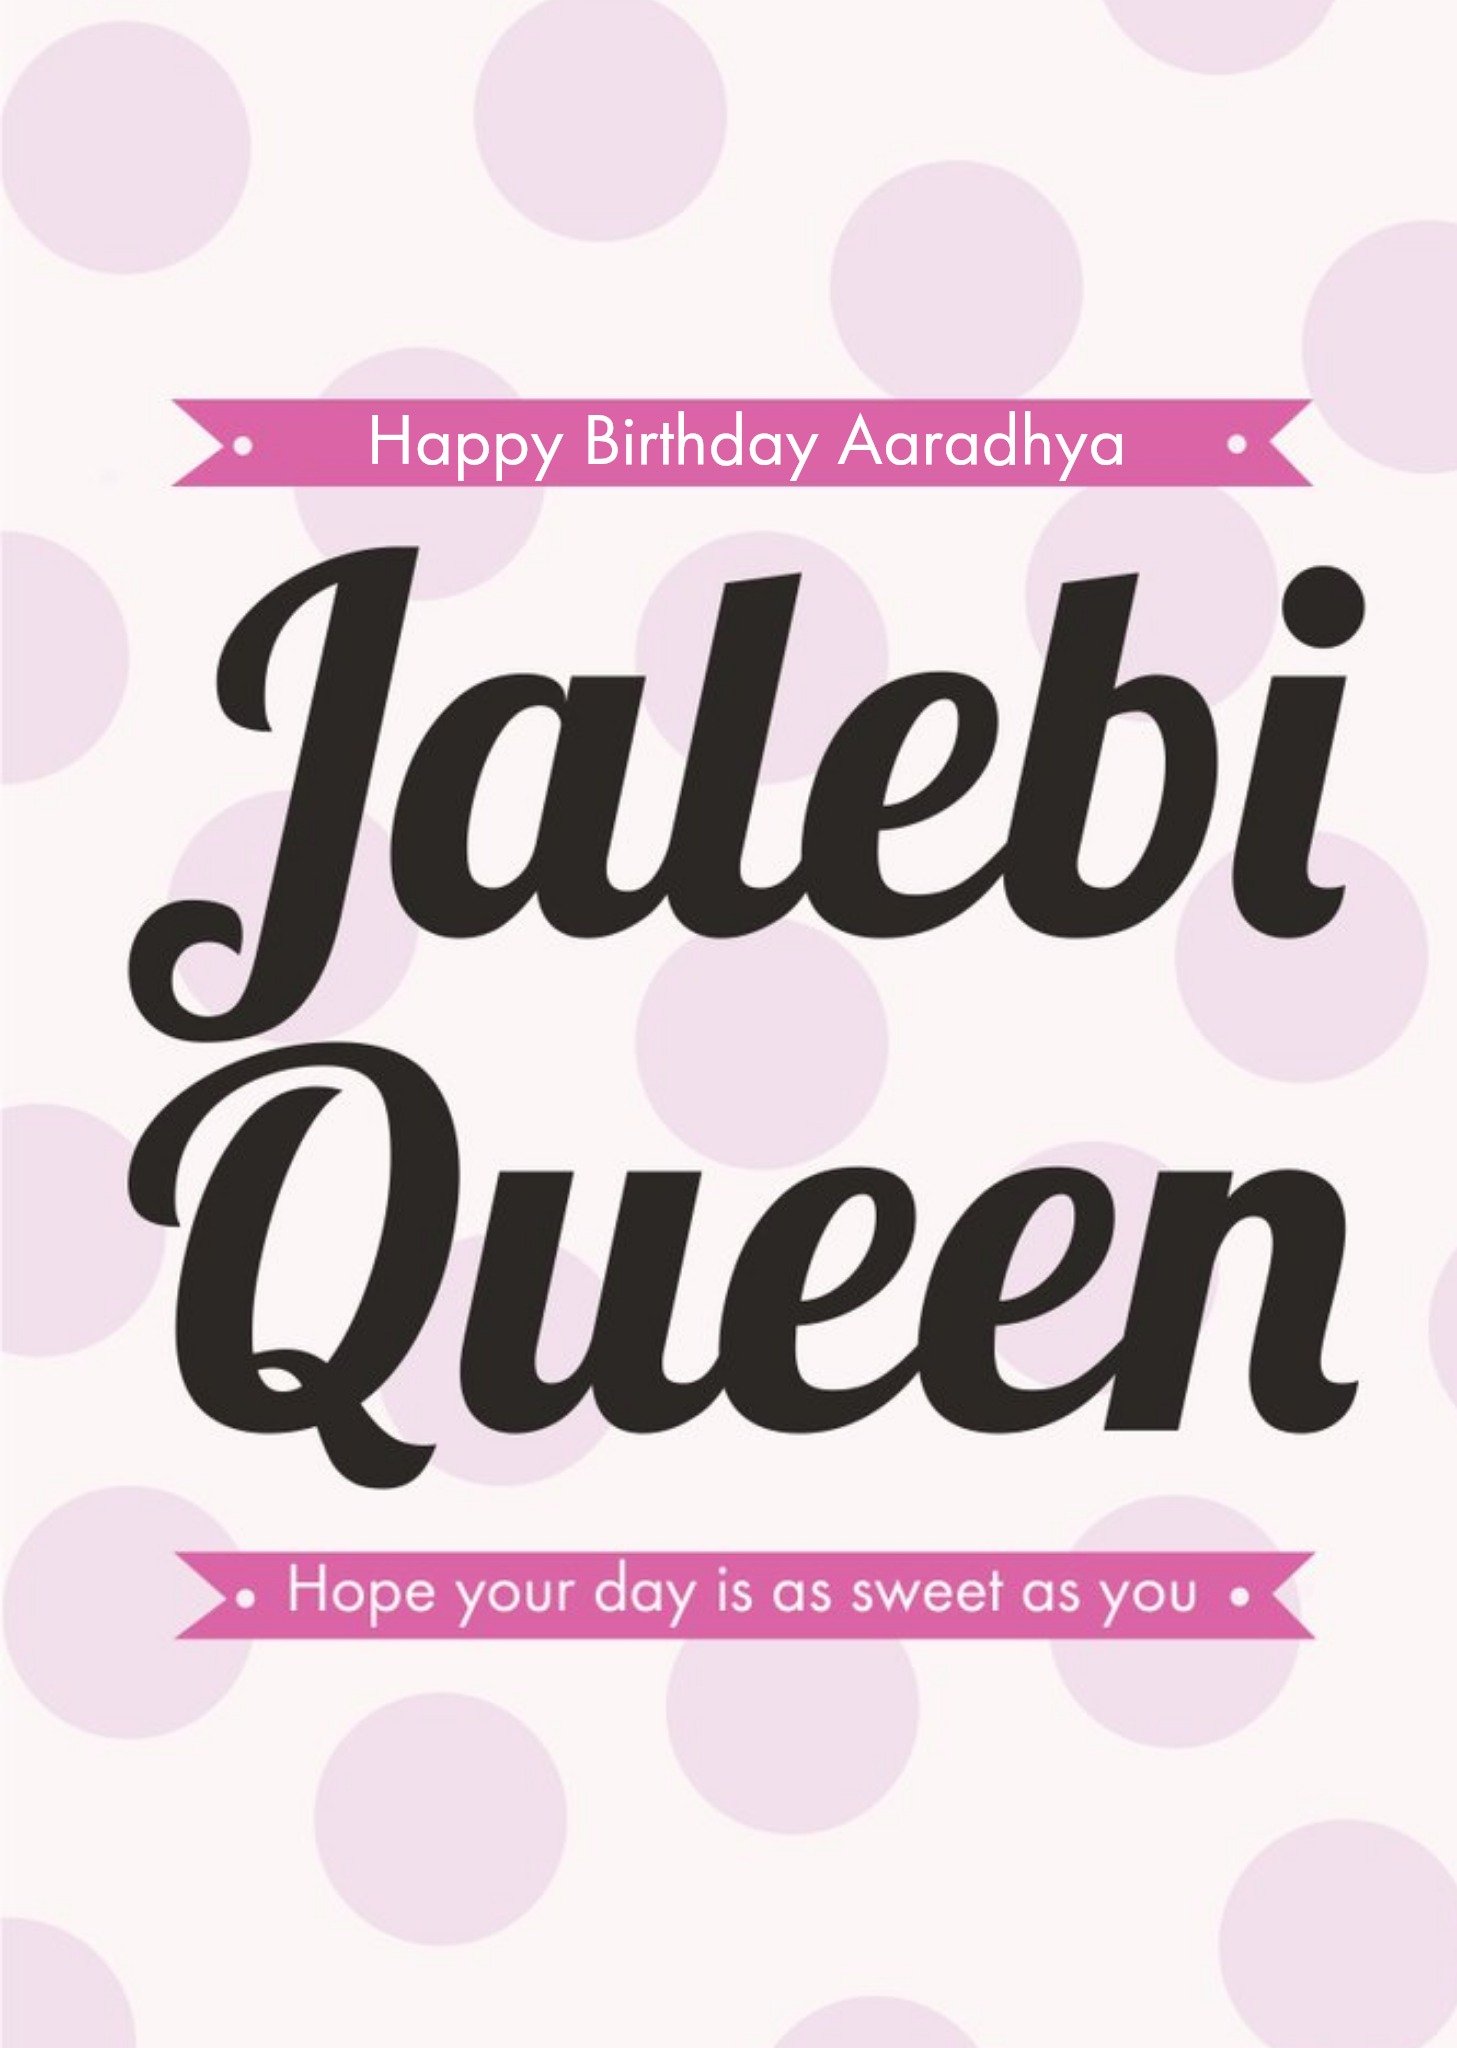 Eastern Print Studio Eastern Print Jalebi Queen Sweet Birthday Card, Large